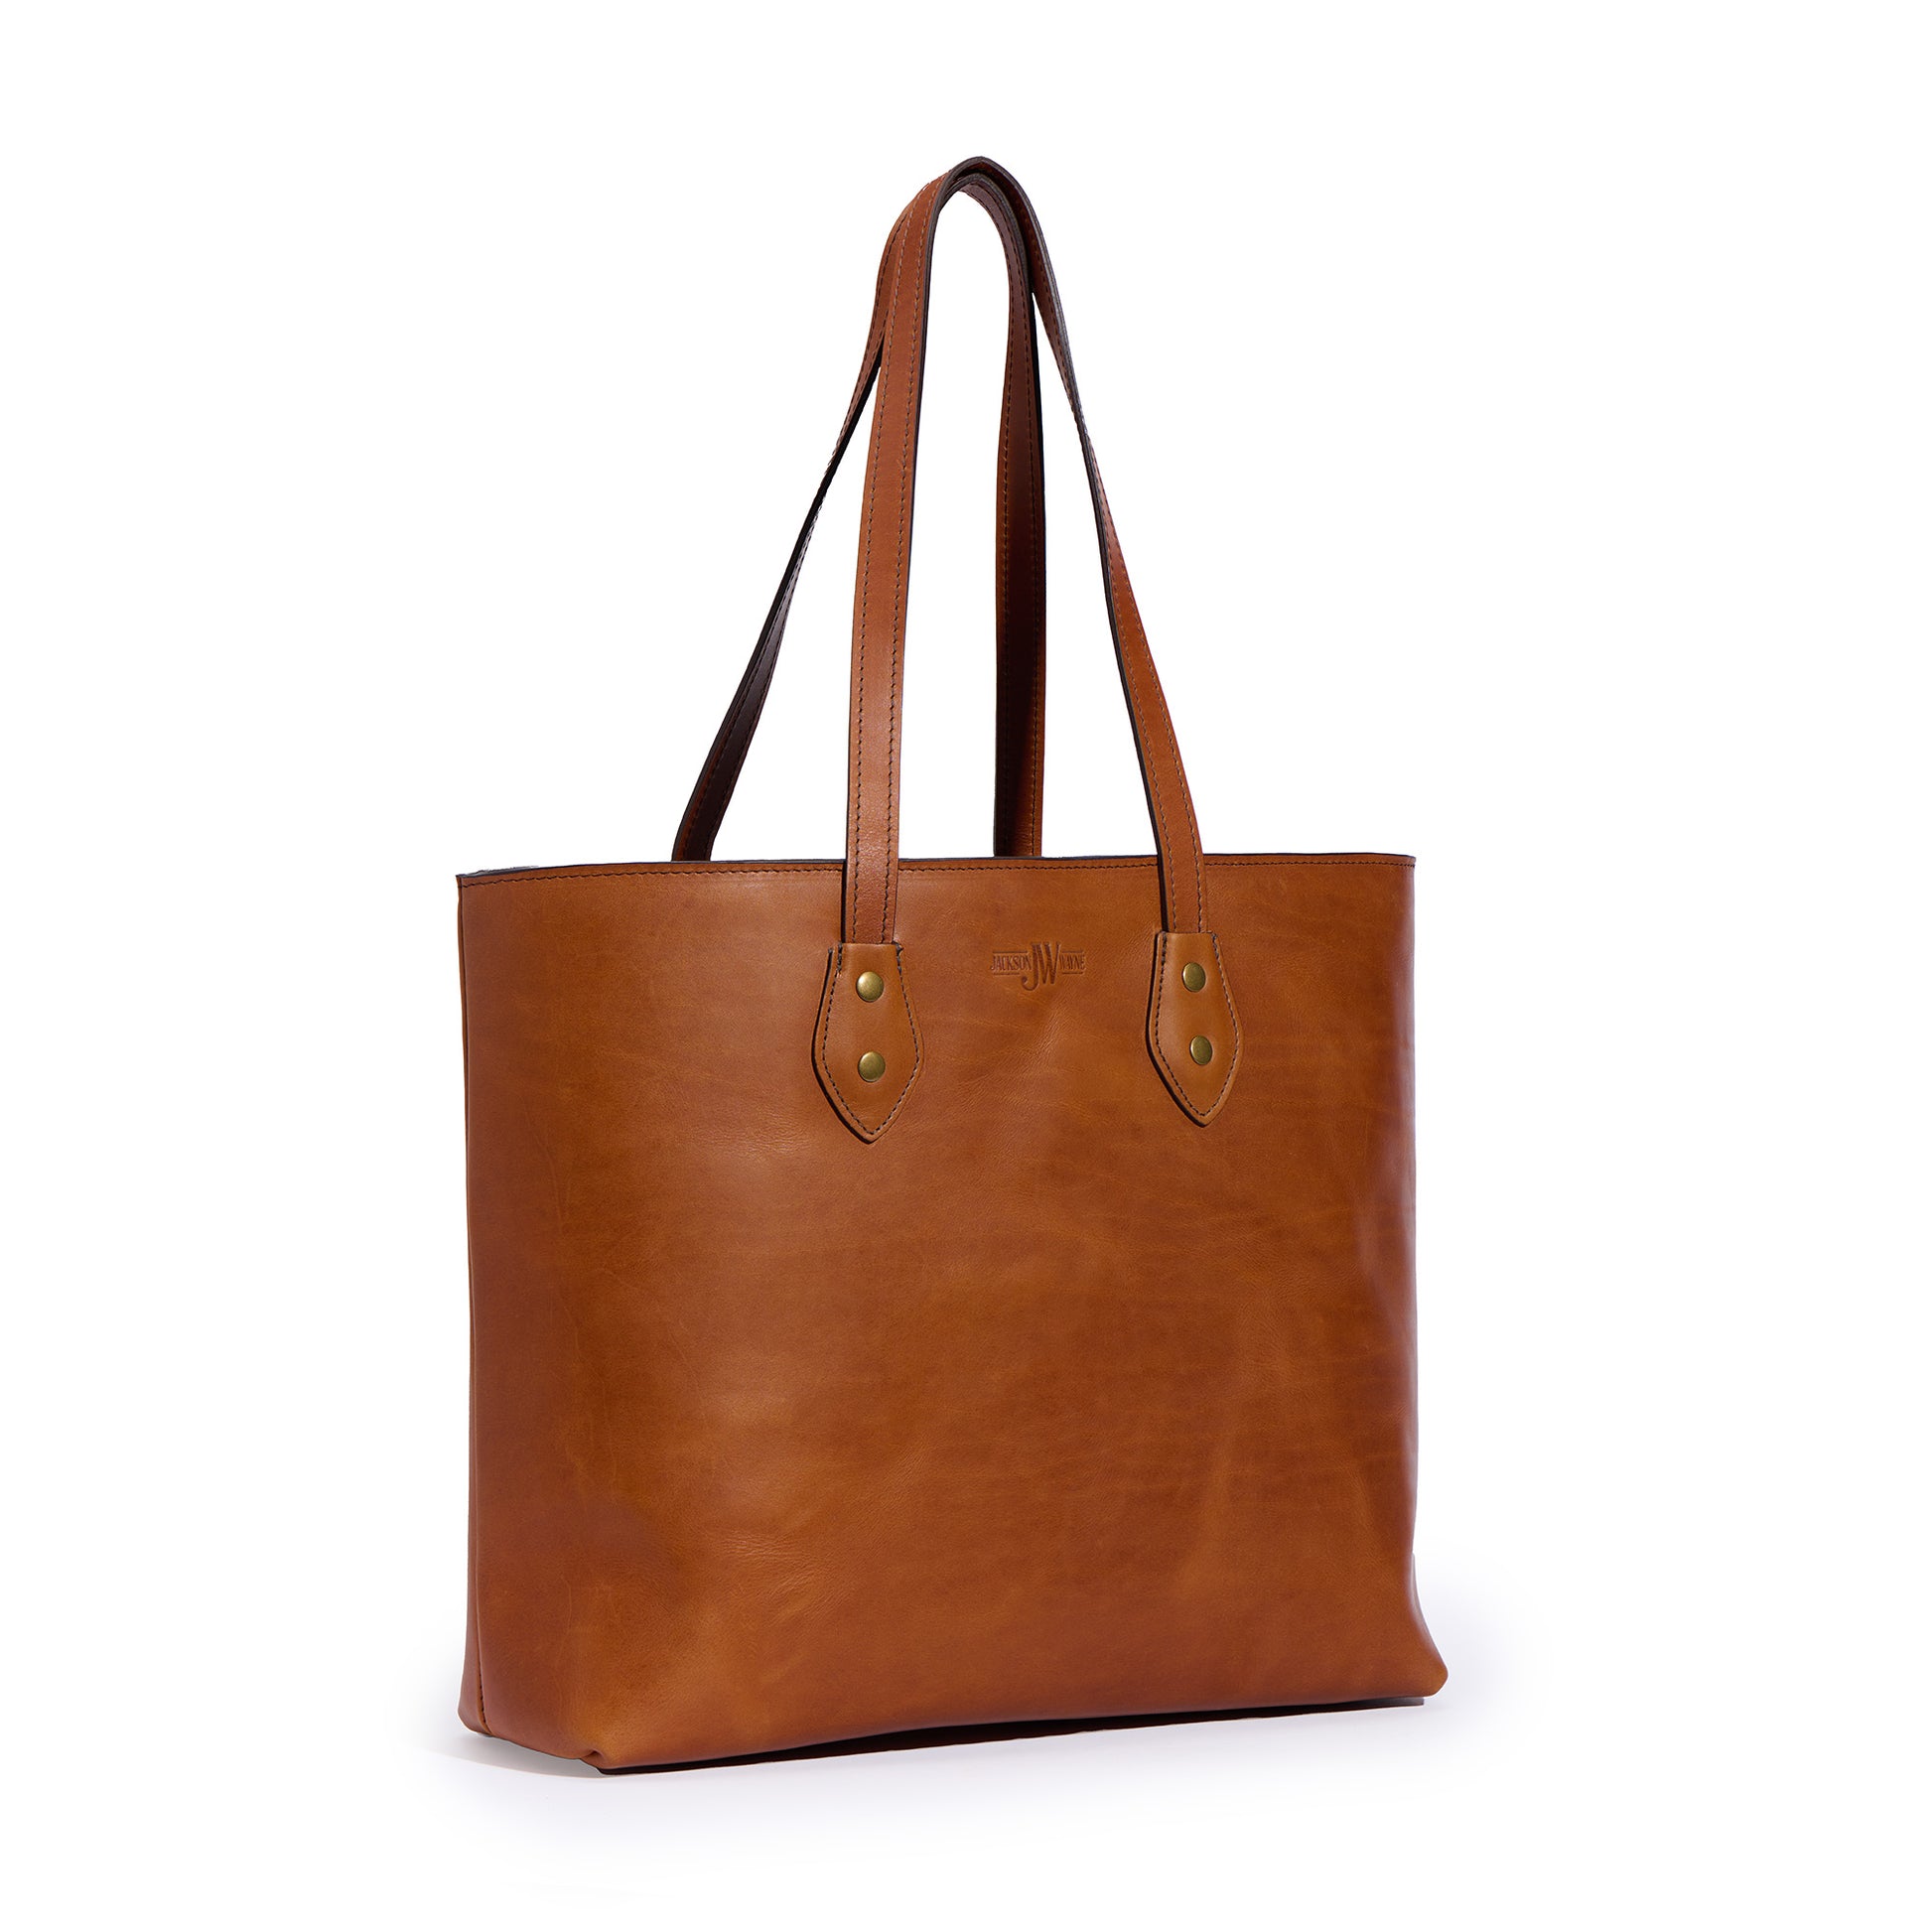 full grain leather tote bag by Jackson Wayne back side angle - saddle tan color